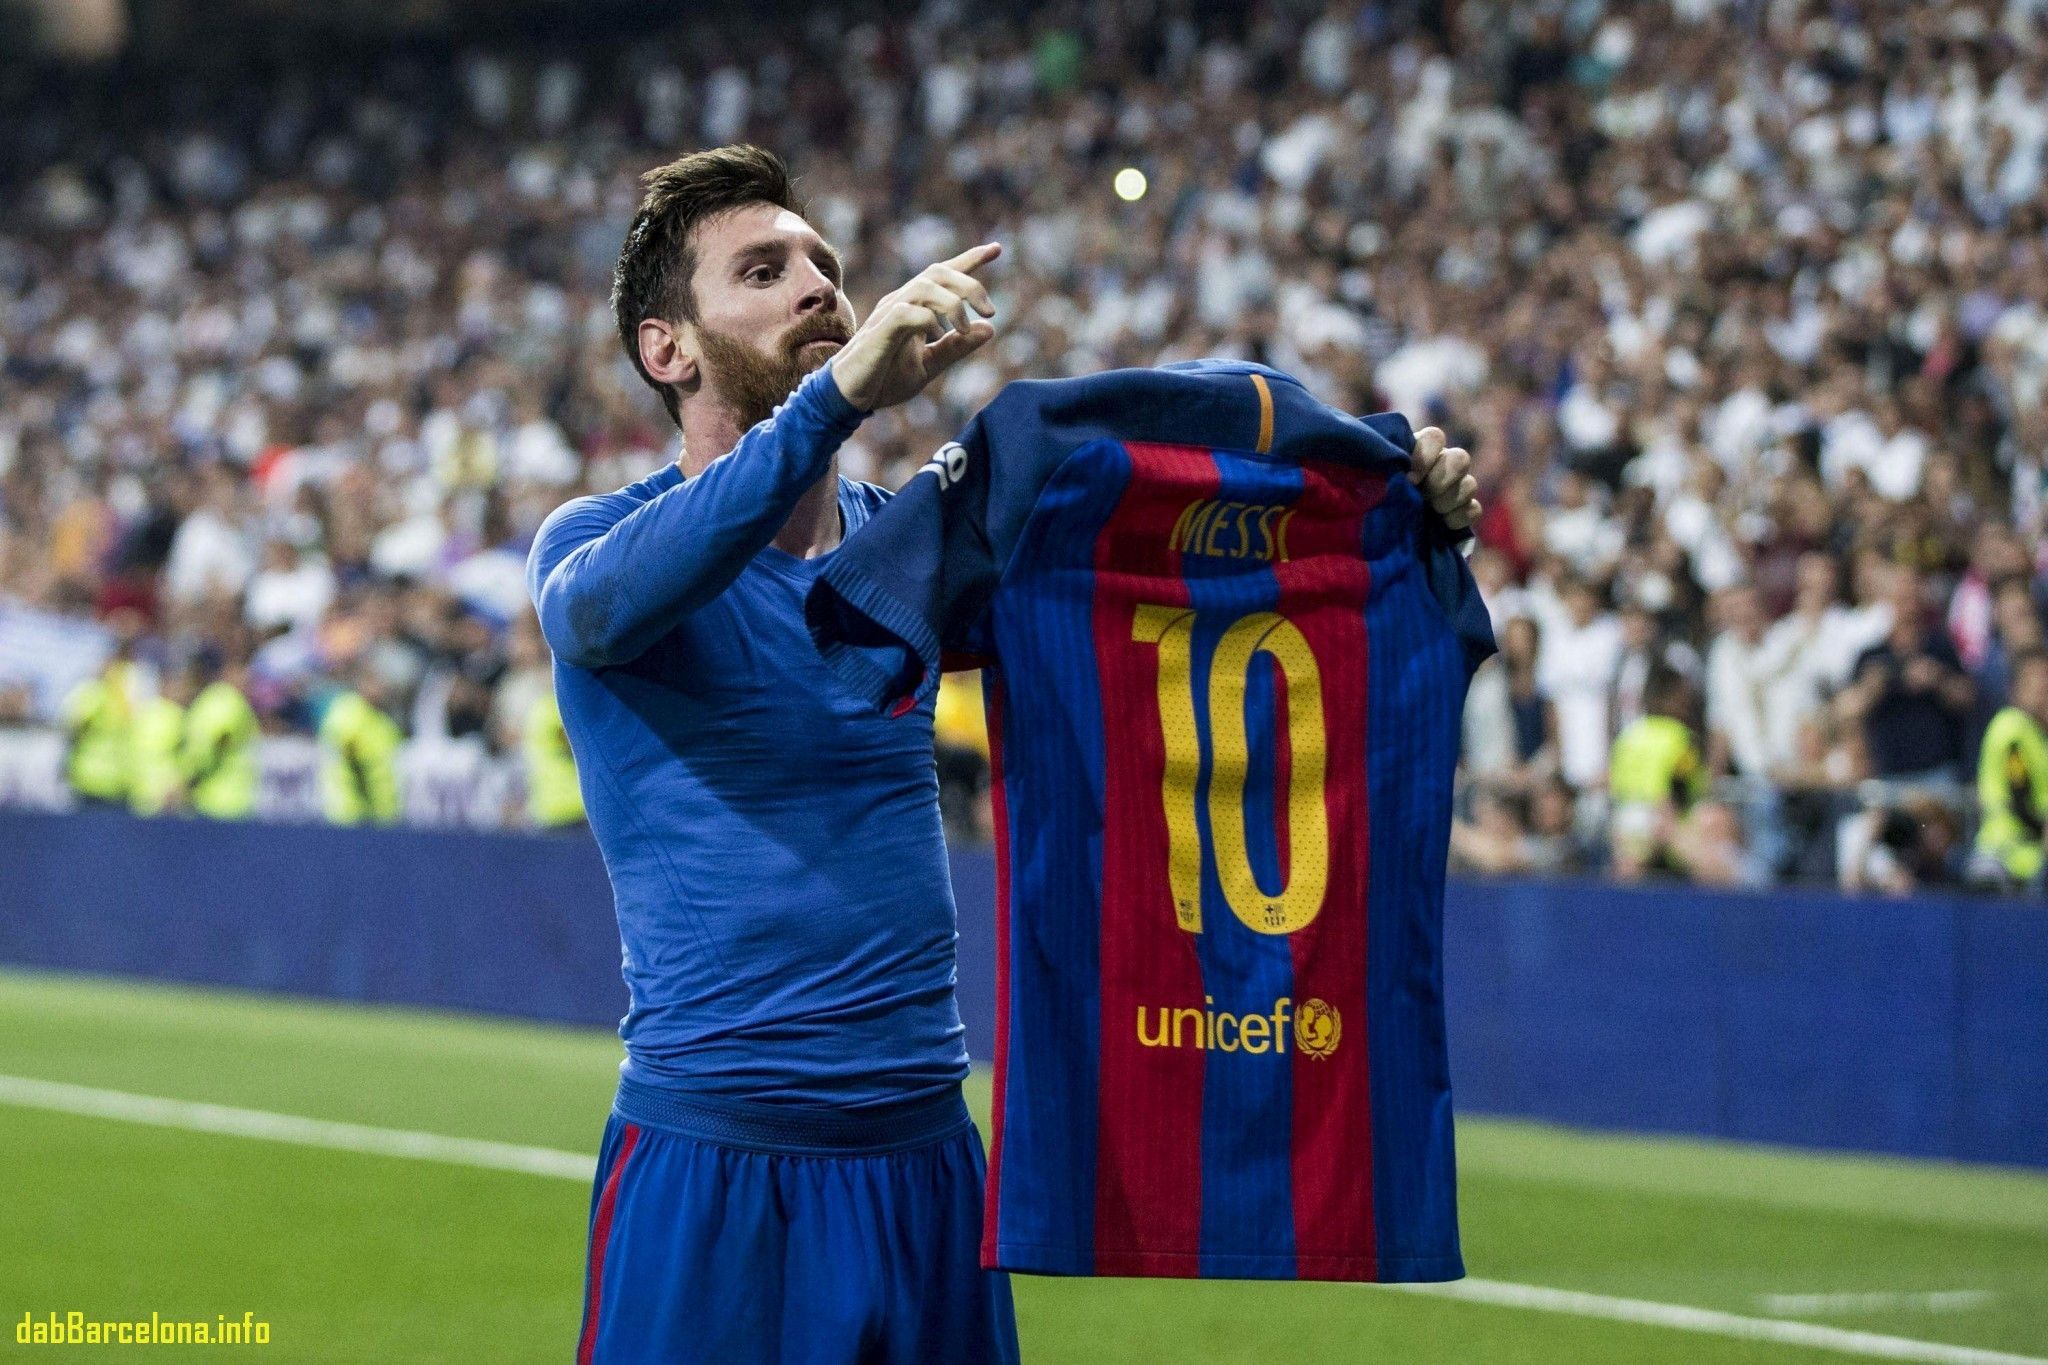 Sở hữu bộ sưu tập hình nền Real Madrid của Messi dành cho những fan hâm mộ bóng đá. Với những thiết kế đẹp mắt và tinh tế, bộ sưu tập này không chỉ là một cách để cổ vũ cho đội bóng mà còn là món quà tuyệt vời dành cho fan Messi.